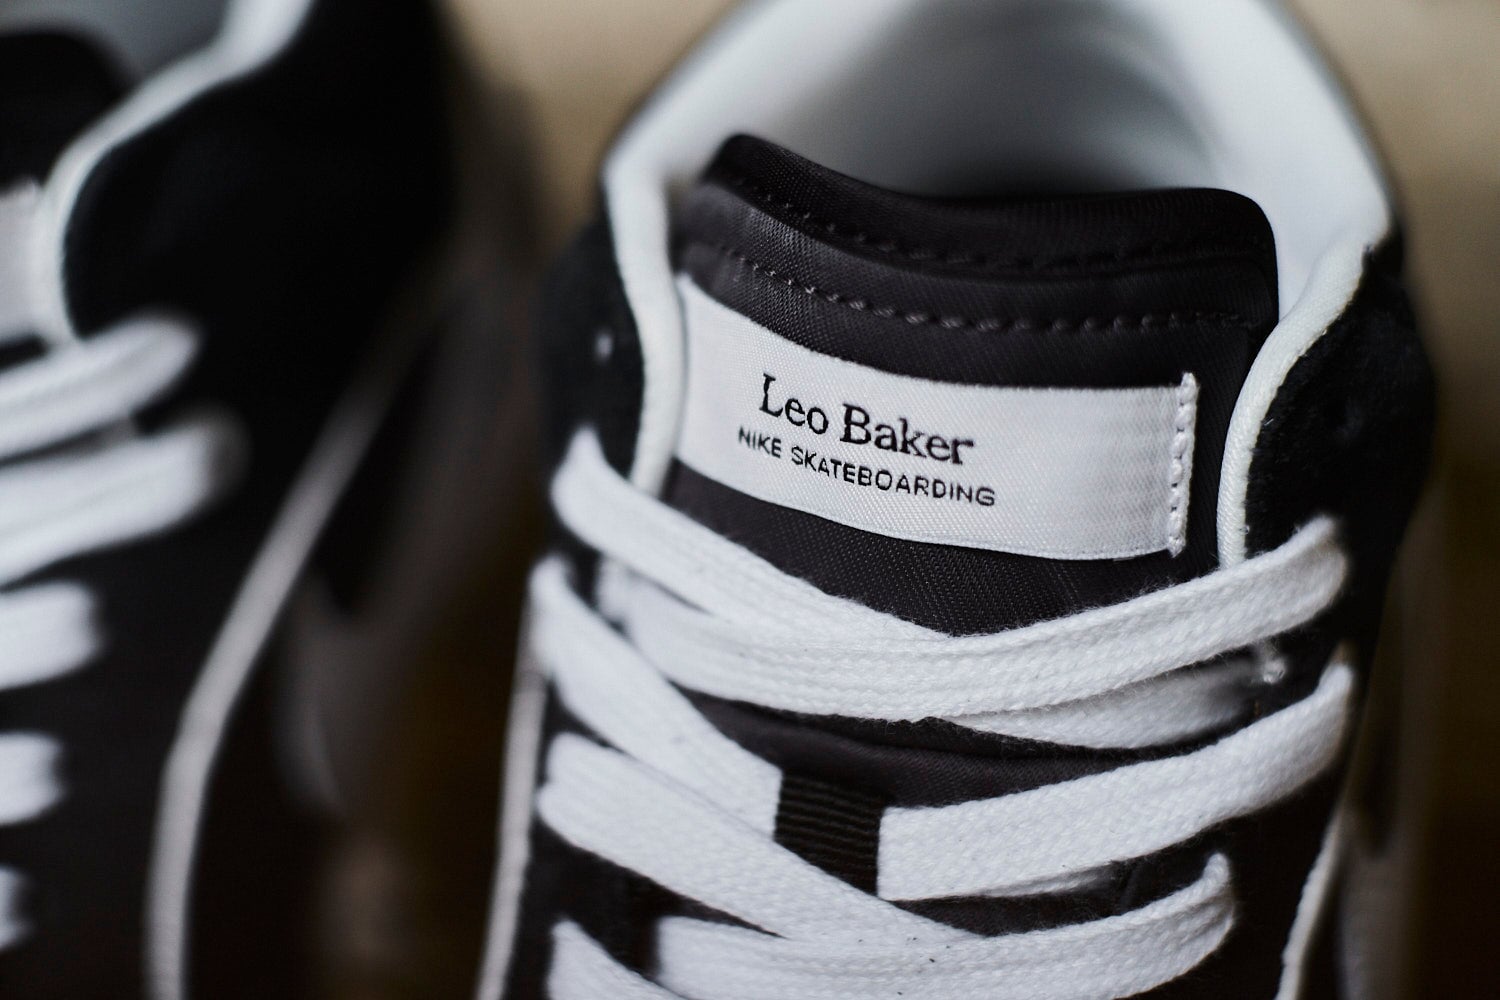 Nike SB React "Leo Baker" Schuhe Unisex Skate-Sneakers Nike Skateboarding 